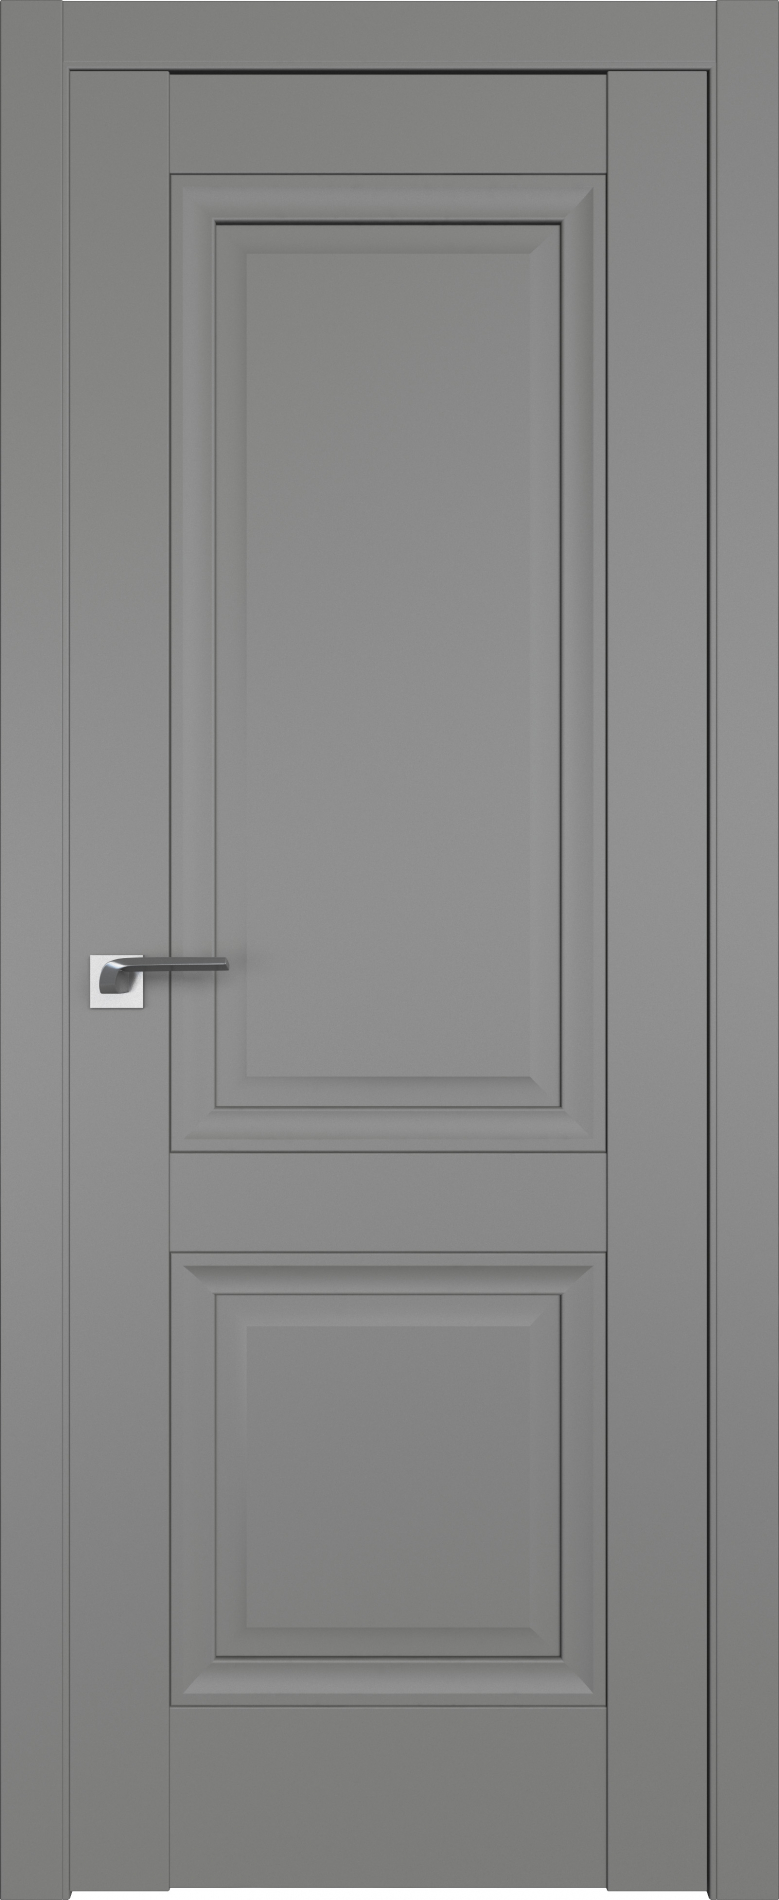 межкомнатные двери  Profil Doors 2.112U грей